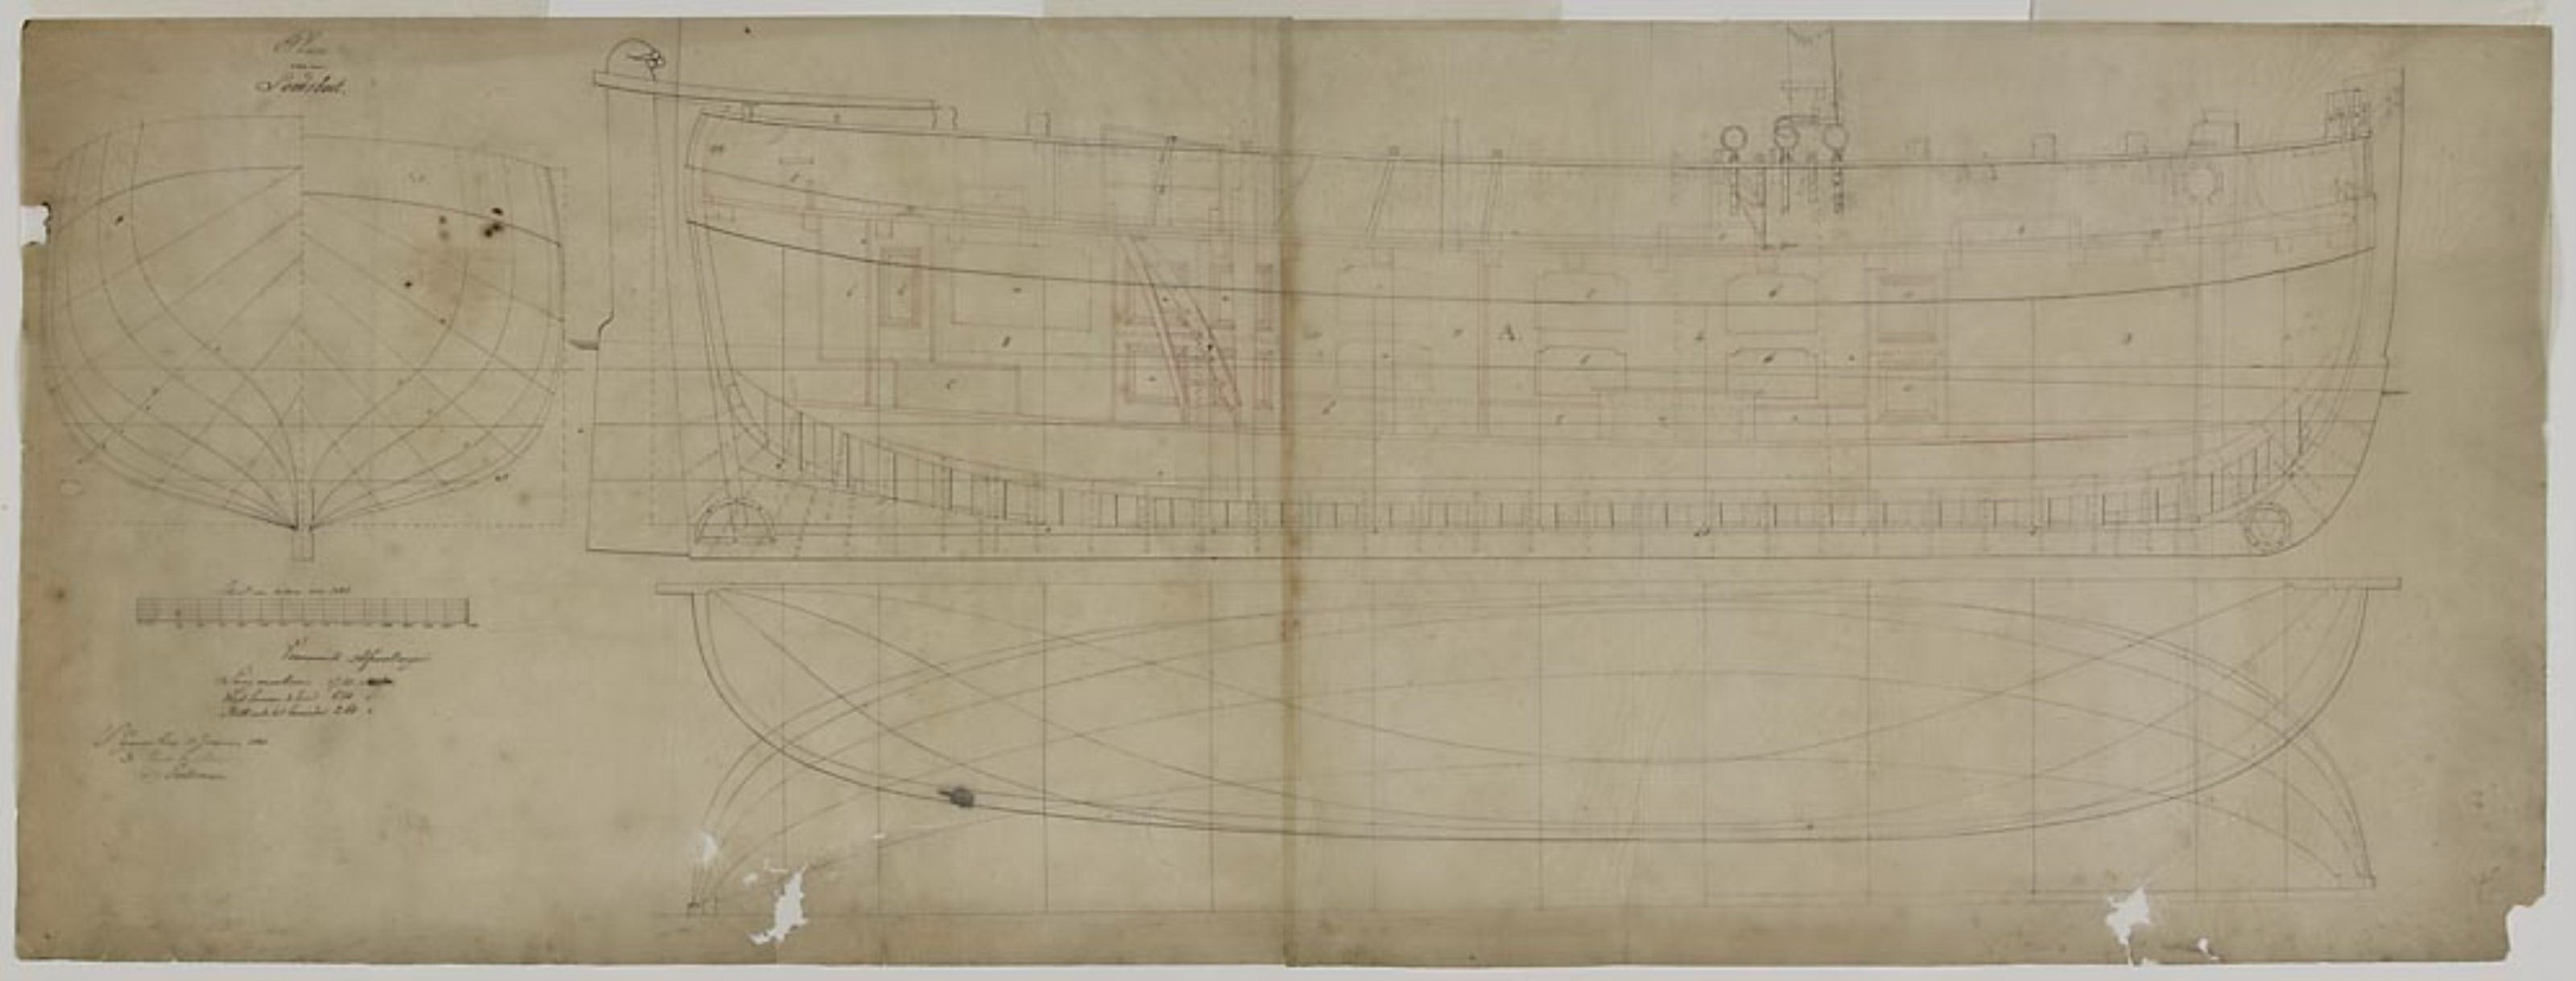 Algemeen plan en lijnenplan van een houten loodsrinkelaar (loodsboot) uit 1836.jpg